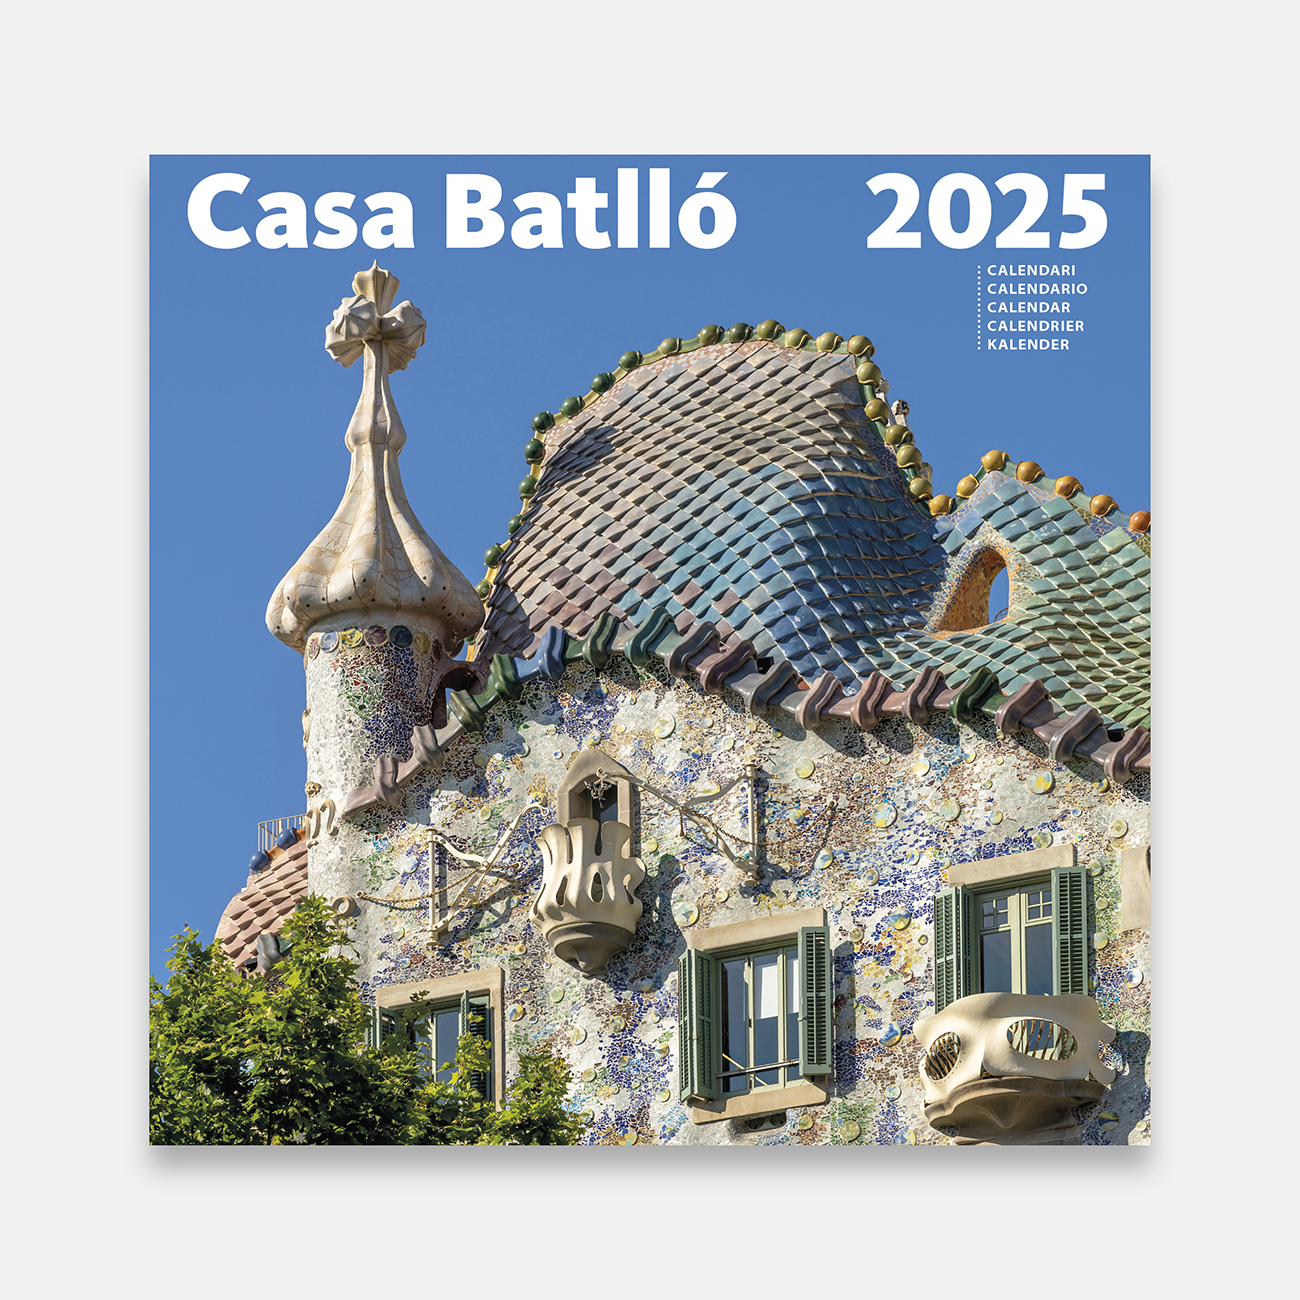 Calendario 2025 Casa Batlló 25cb calendario pared 2025 gaudi casa batllo